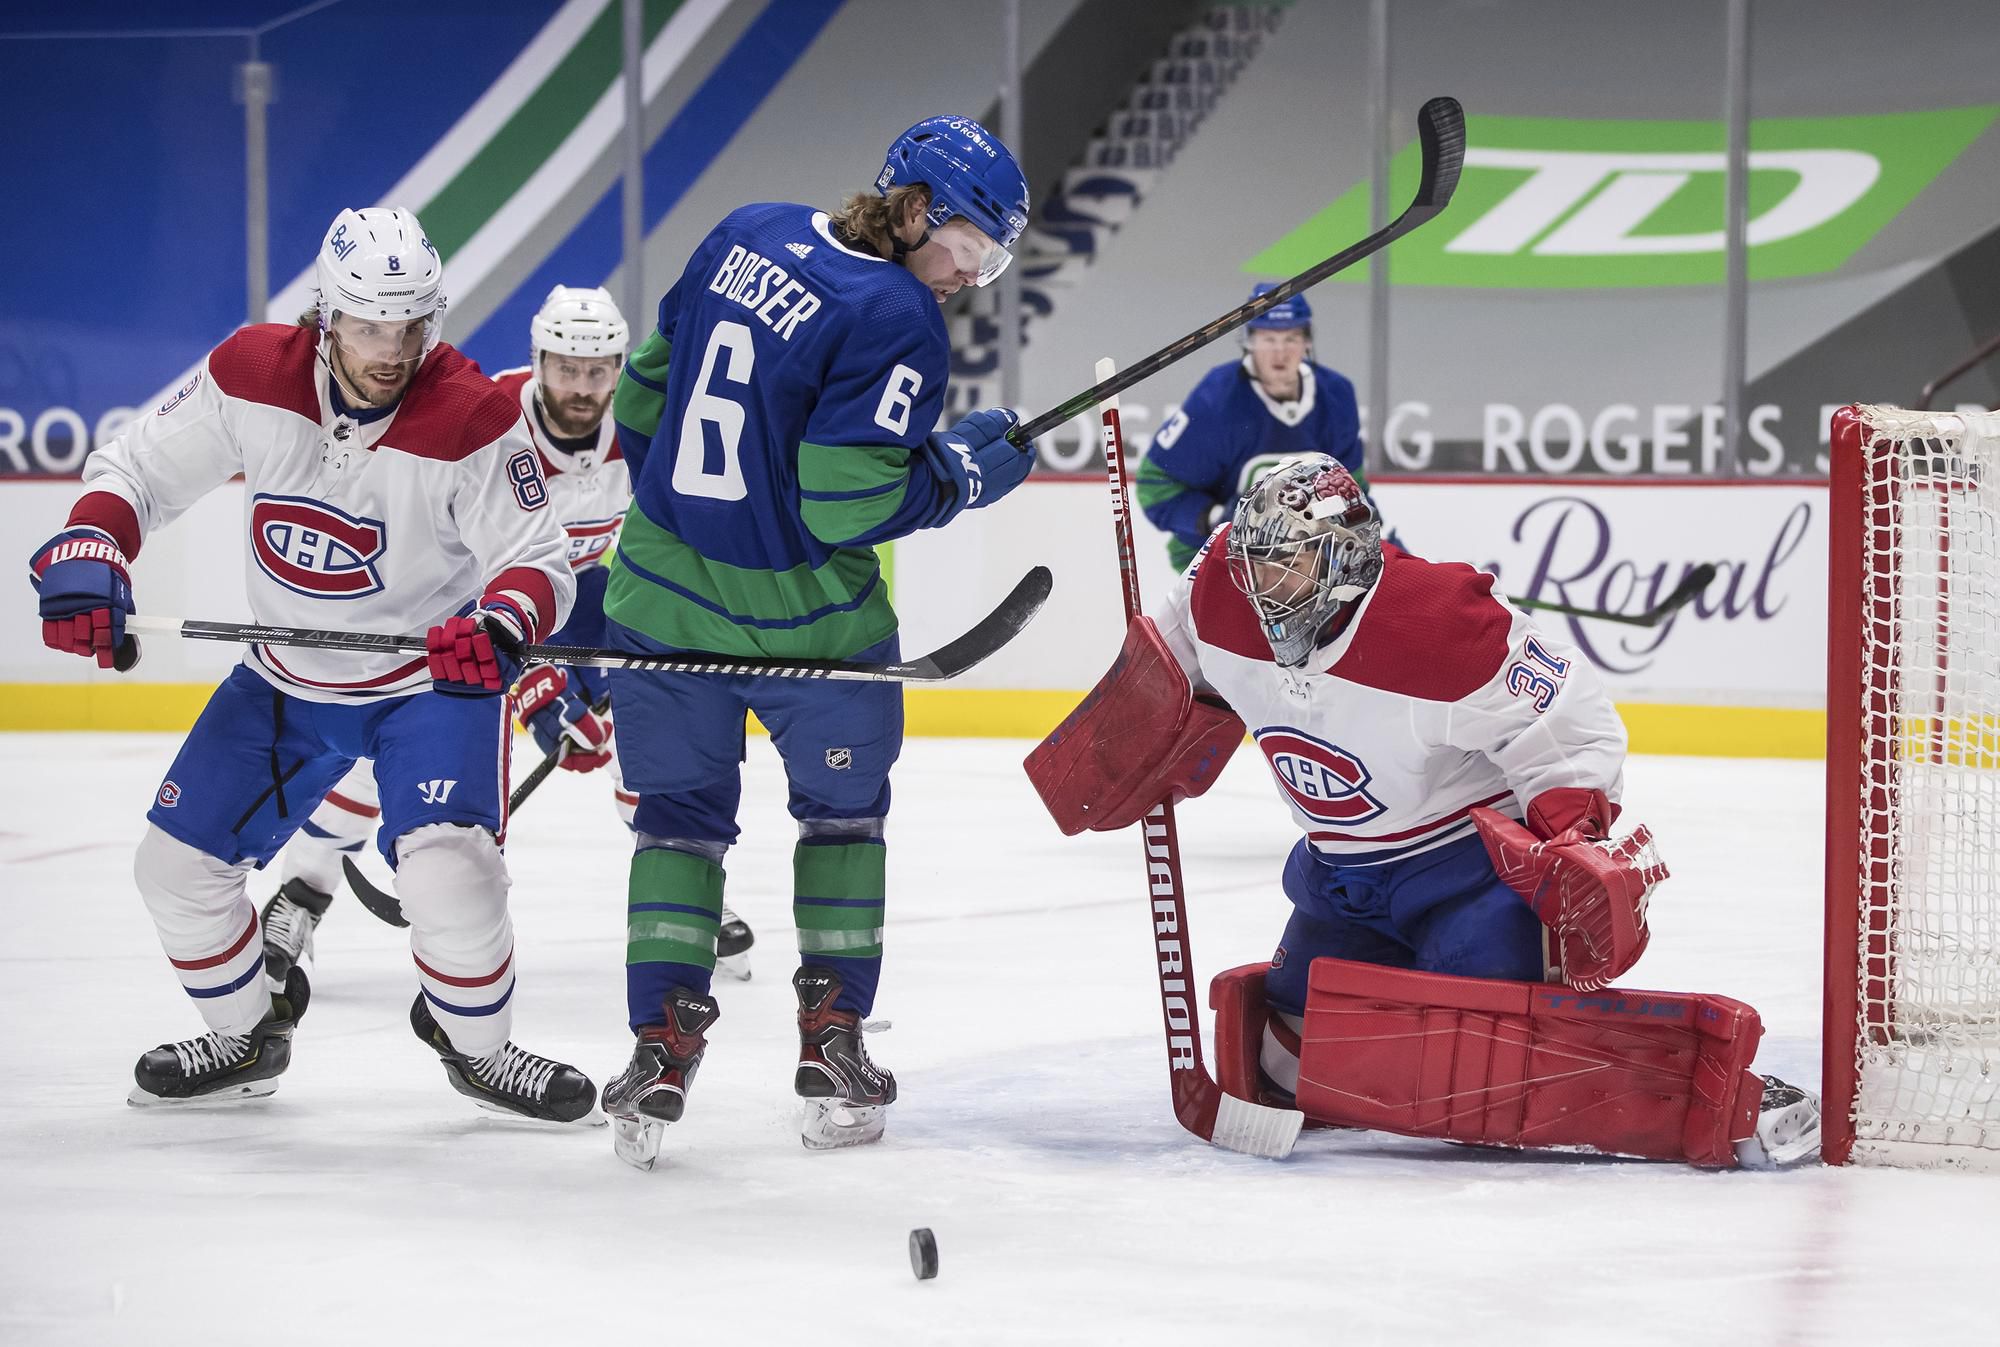 Brankár Carey Price v zápase Vancouver Canucks - Montreal Canadiens